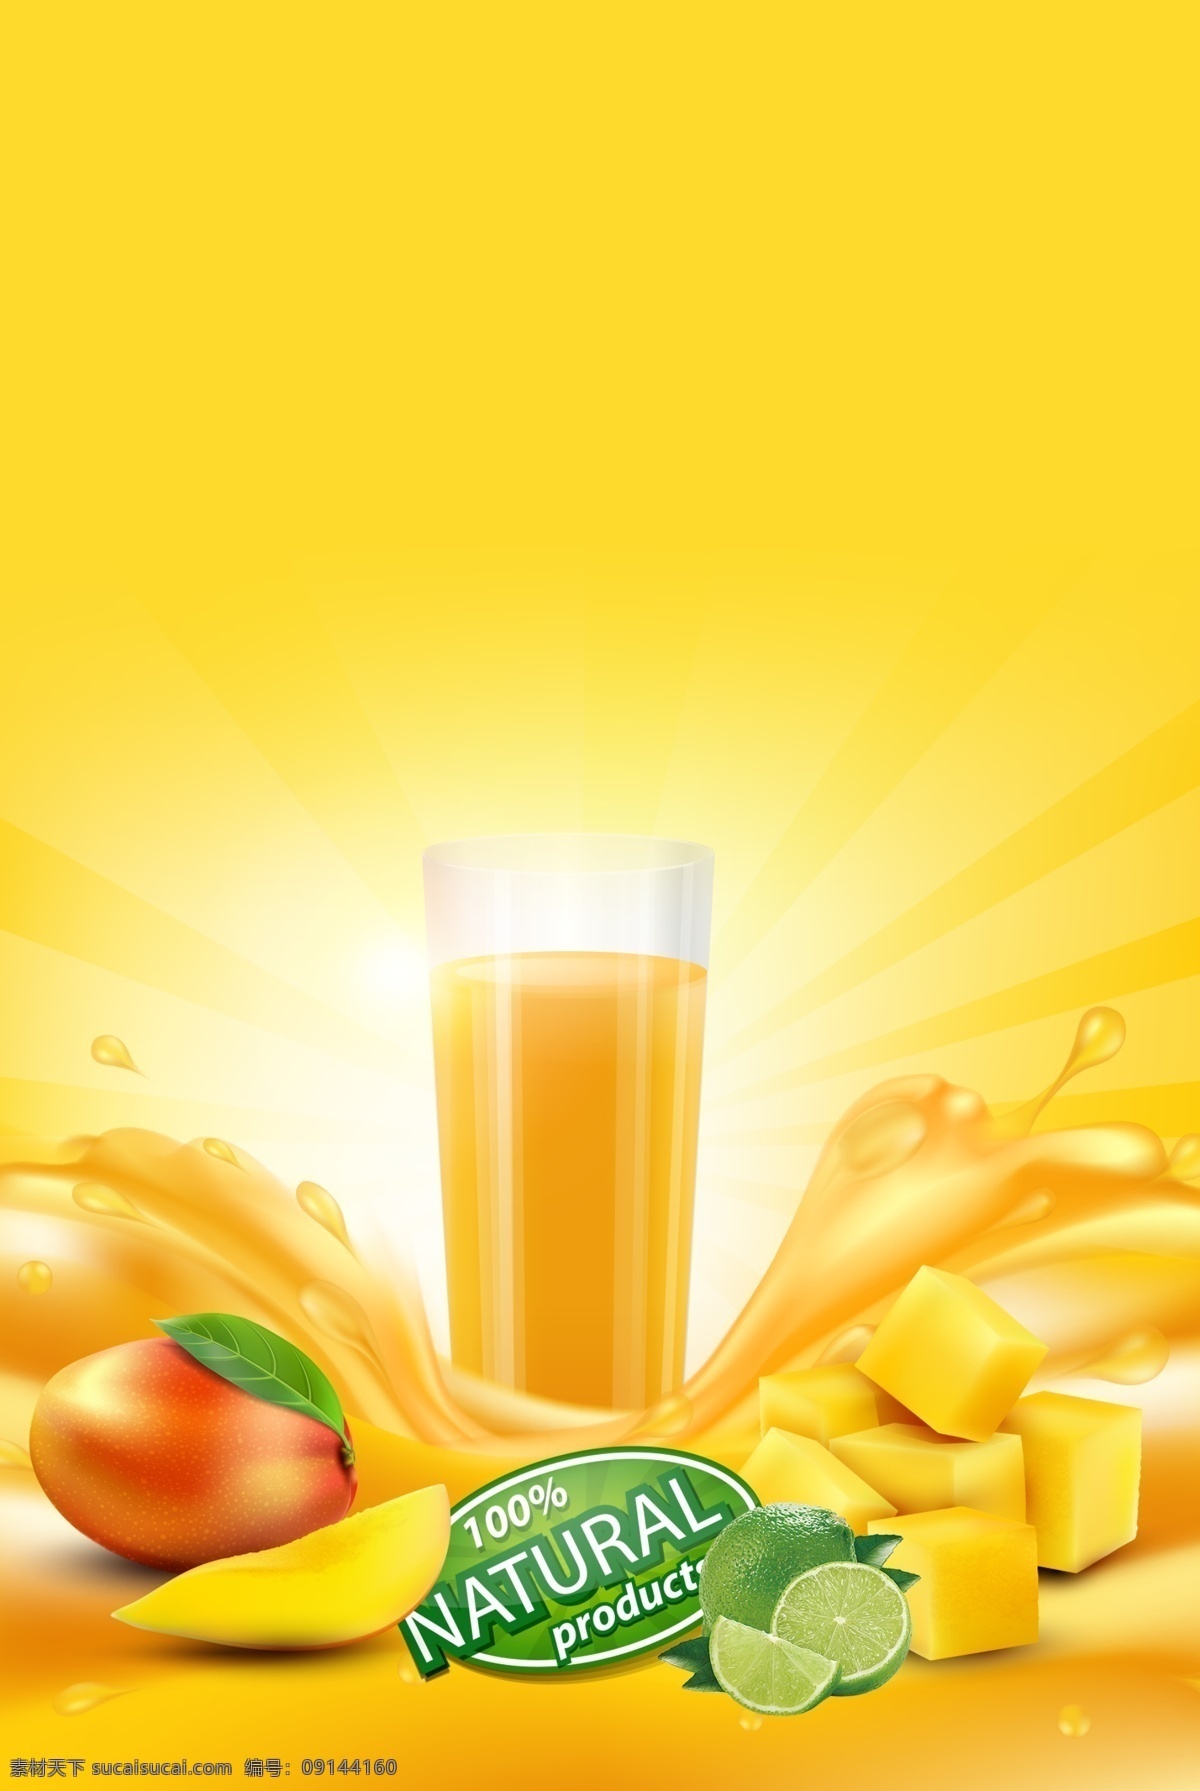 芒果汁 芒果 橙色背景 水果 芒果切块